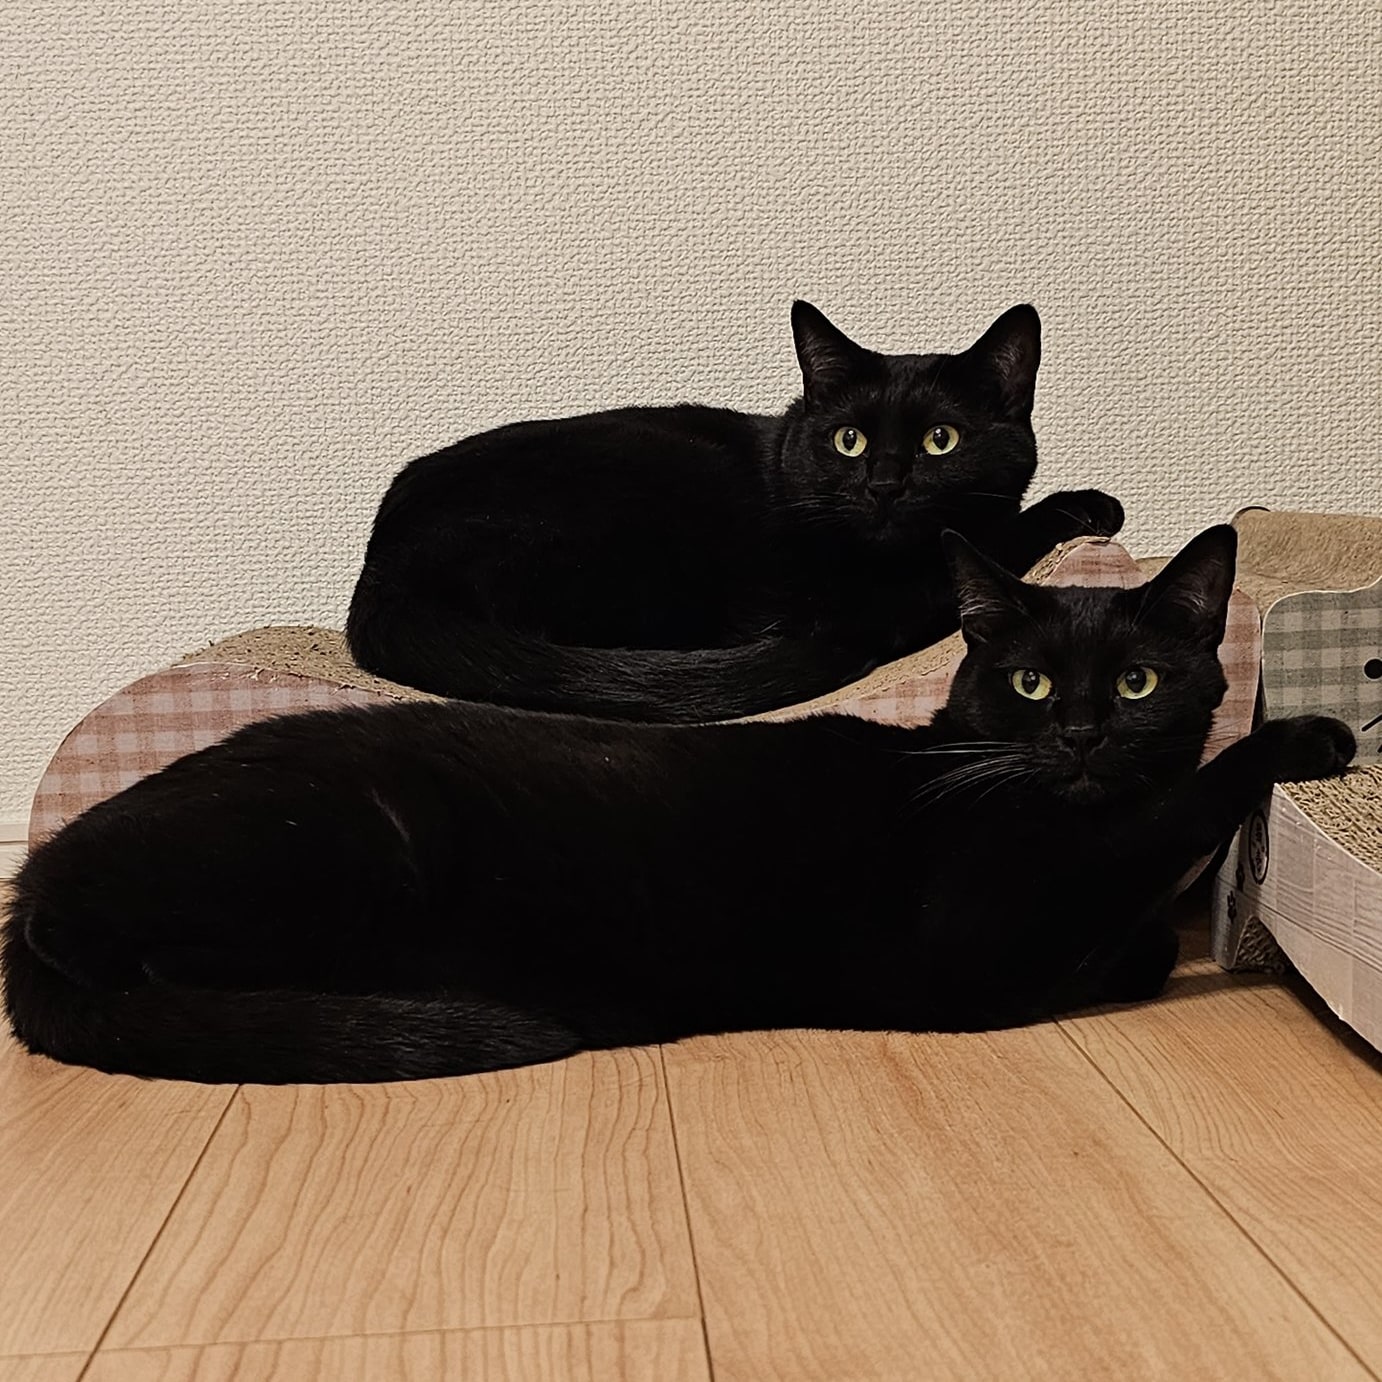 お手々を出して横たわる2匹のシンクロ黒猫